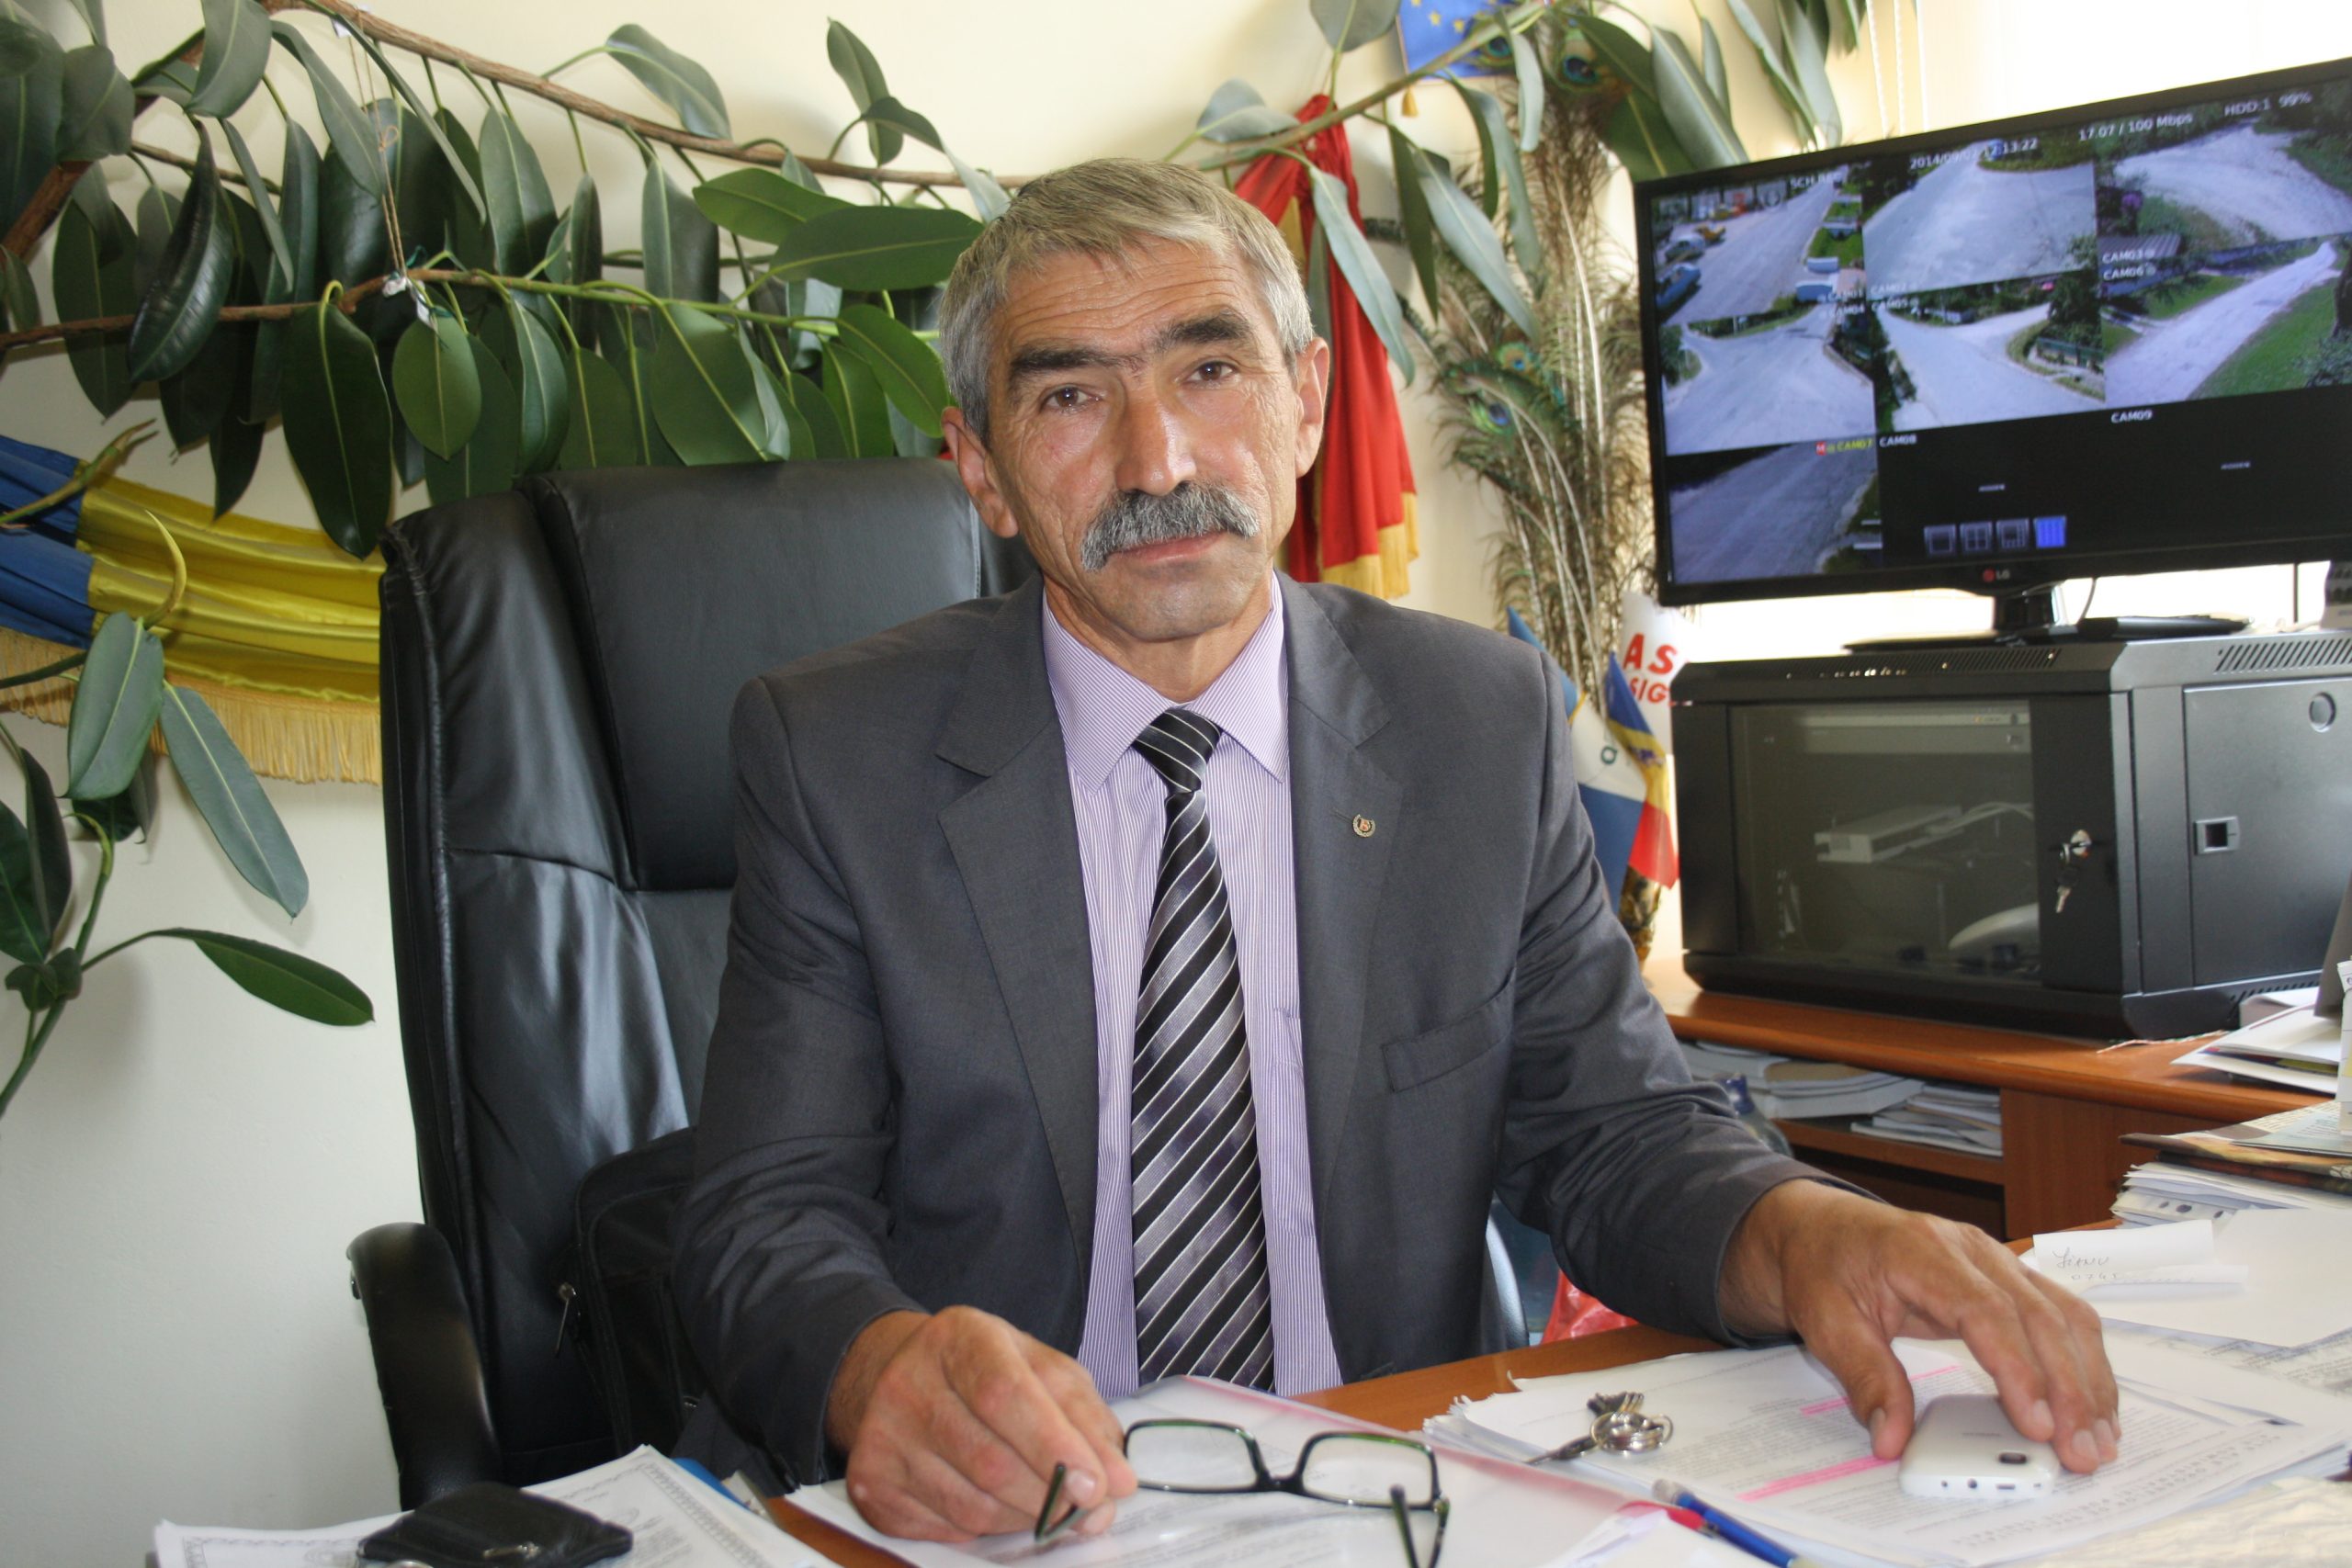 Primarul din Tetoiu, Lucian Antonie a semnat contractele la Ministerul Dezvoltării Regionale pentru 5 proiecte 